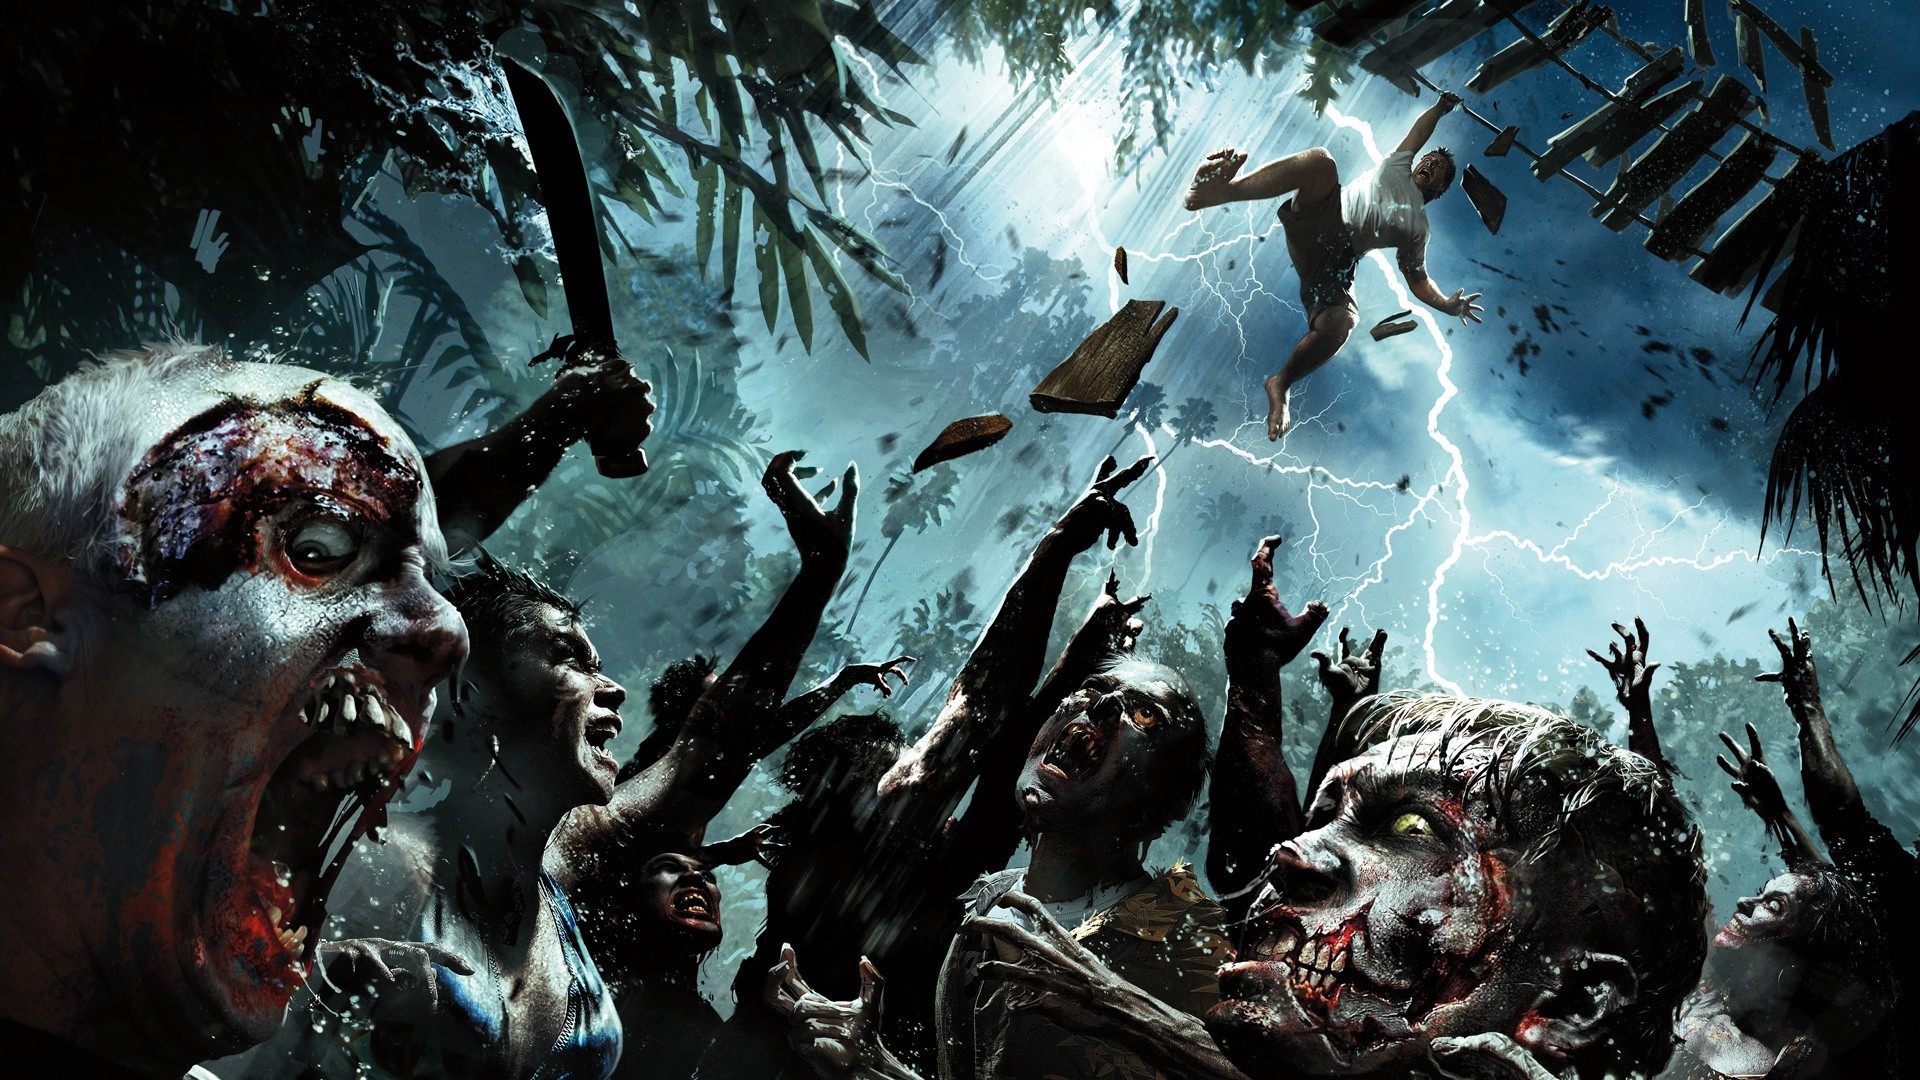 Handy-Wallpaper Computerspiele, Dead Island kostenlos herunterladen.